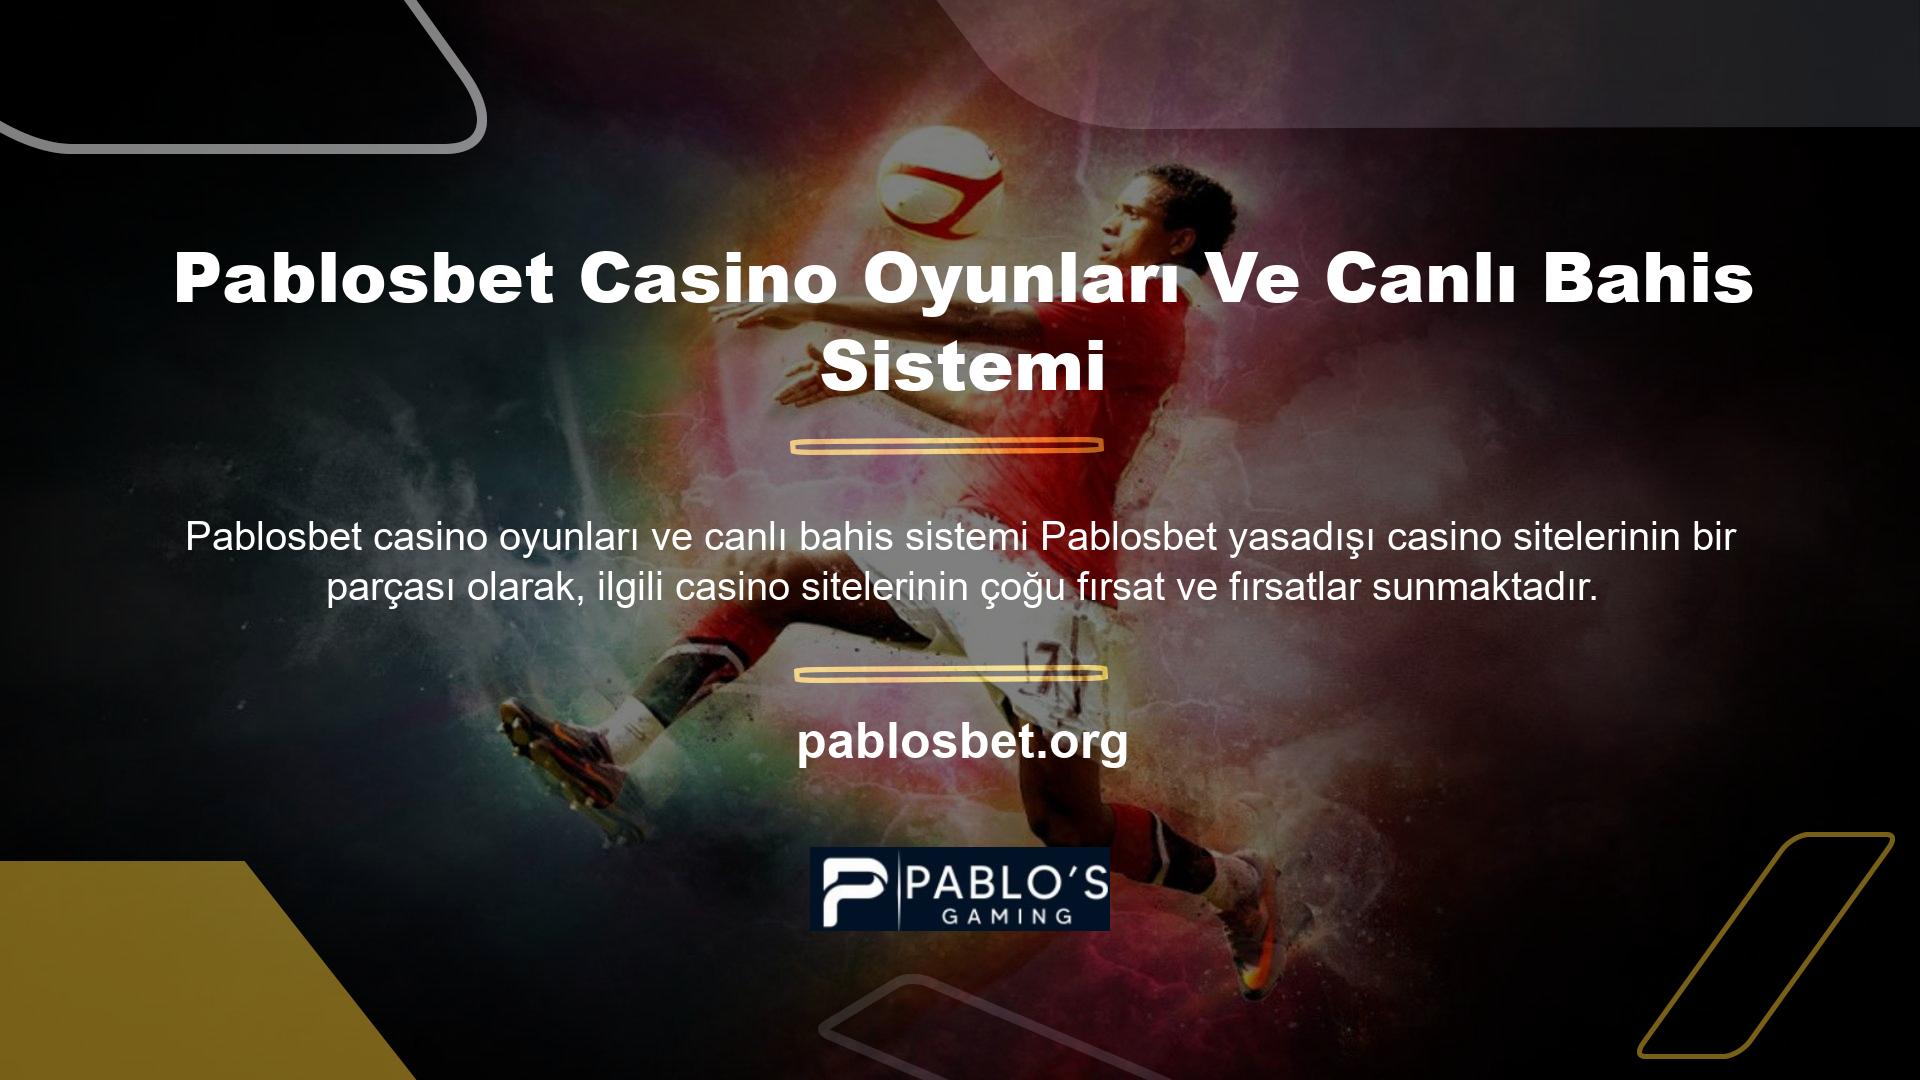 Pablosbet yasa dışı casino siteleri, casino oyunları ve diğer canlı bahisler aracılığıyla büyük kazanmanıza olanak tanır